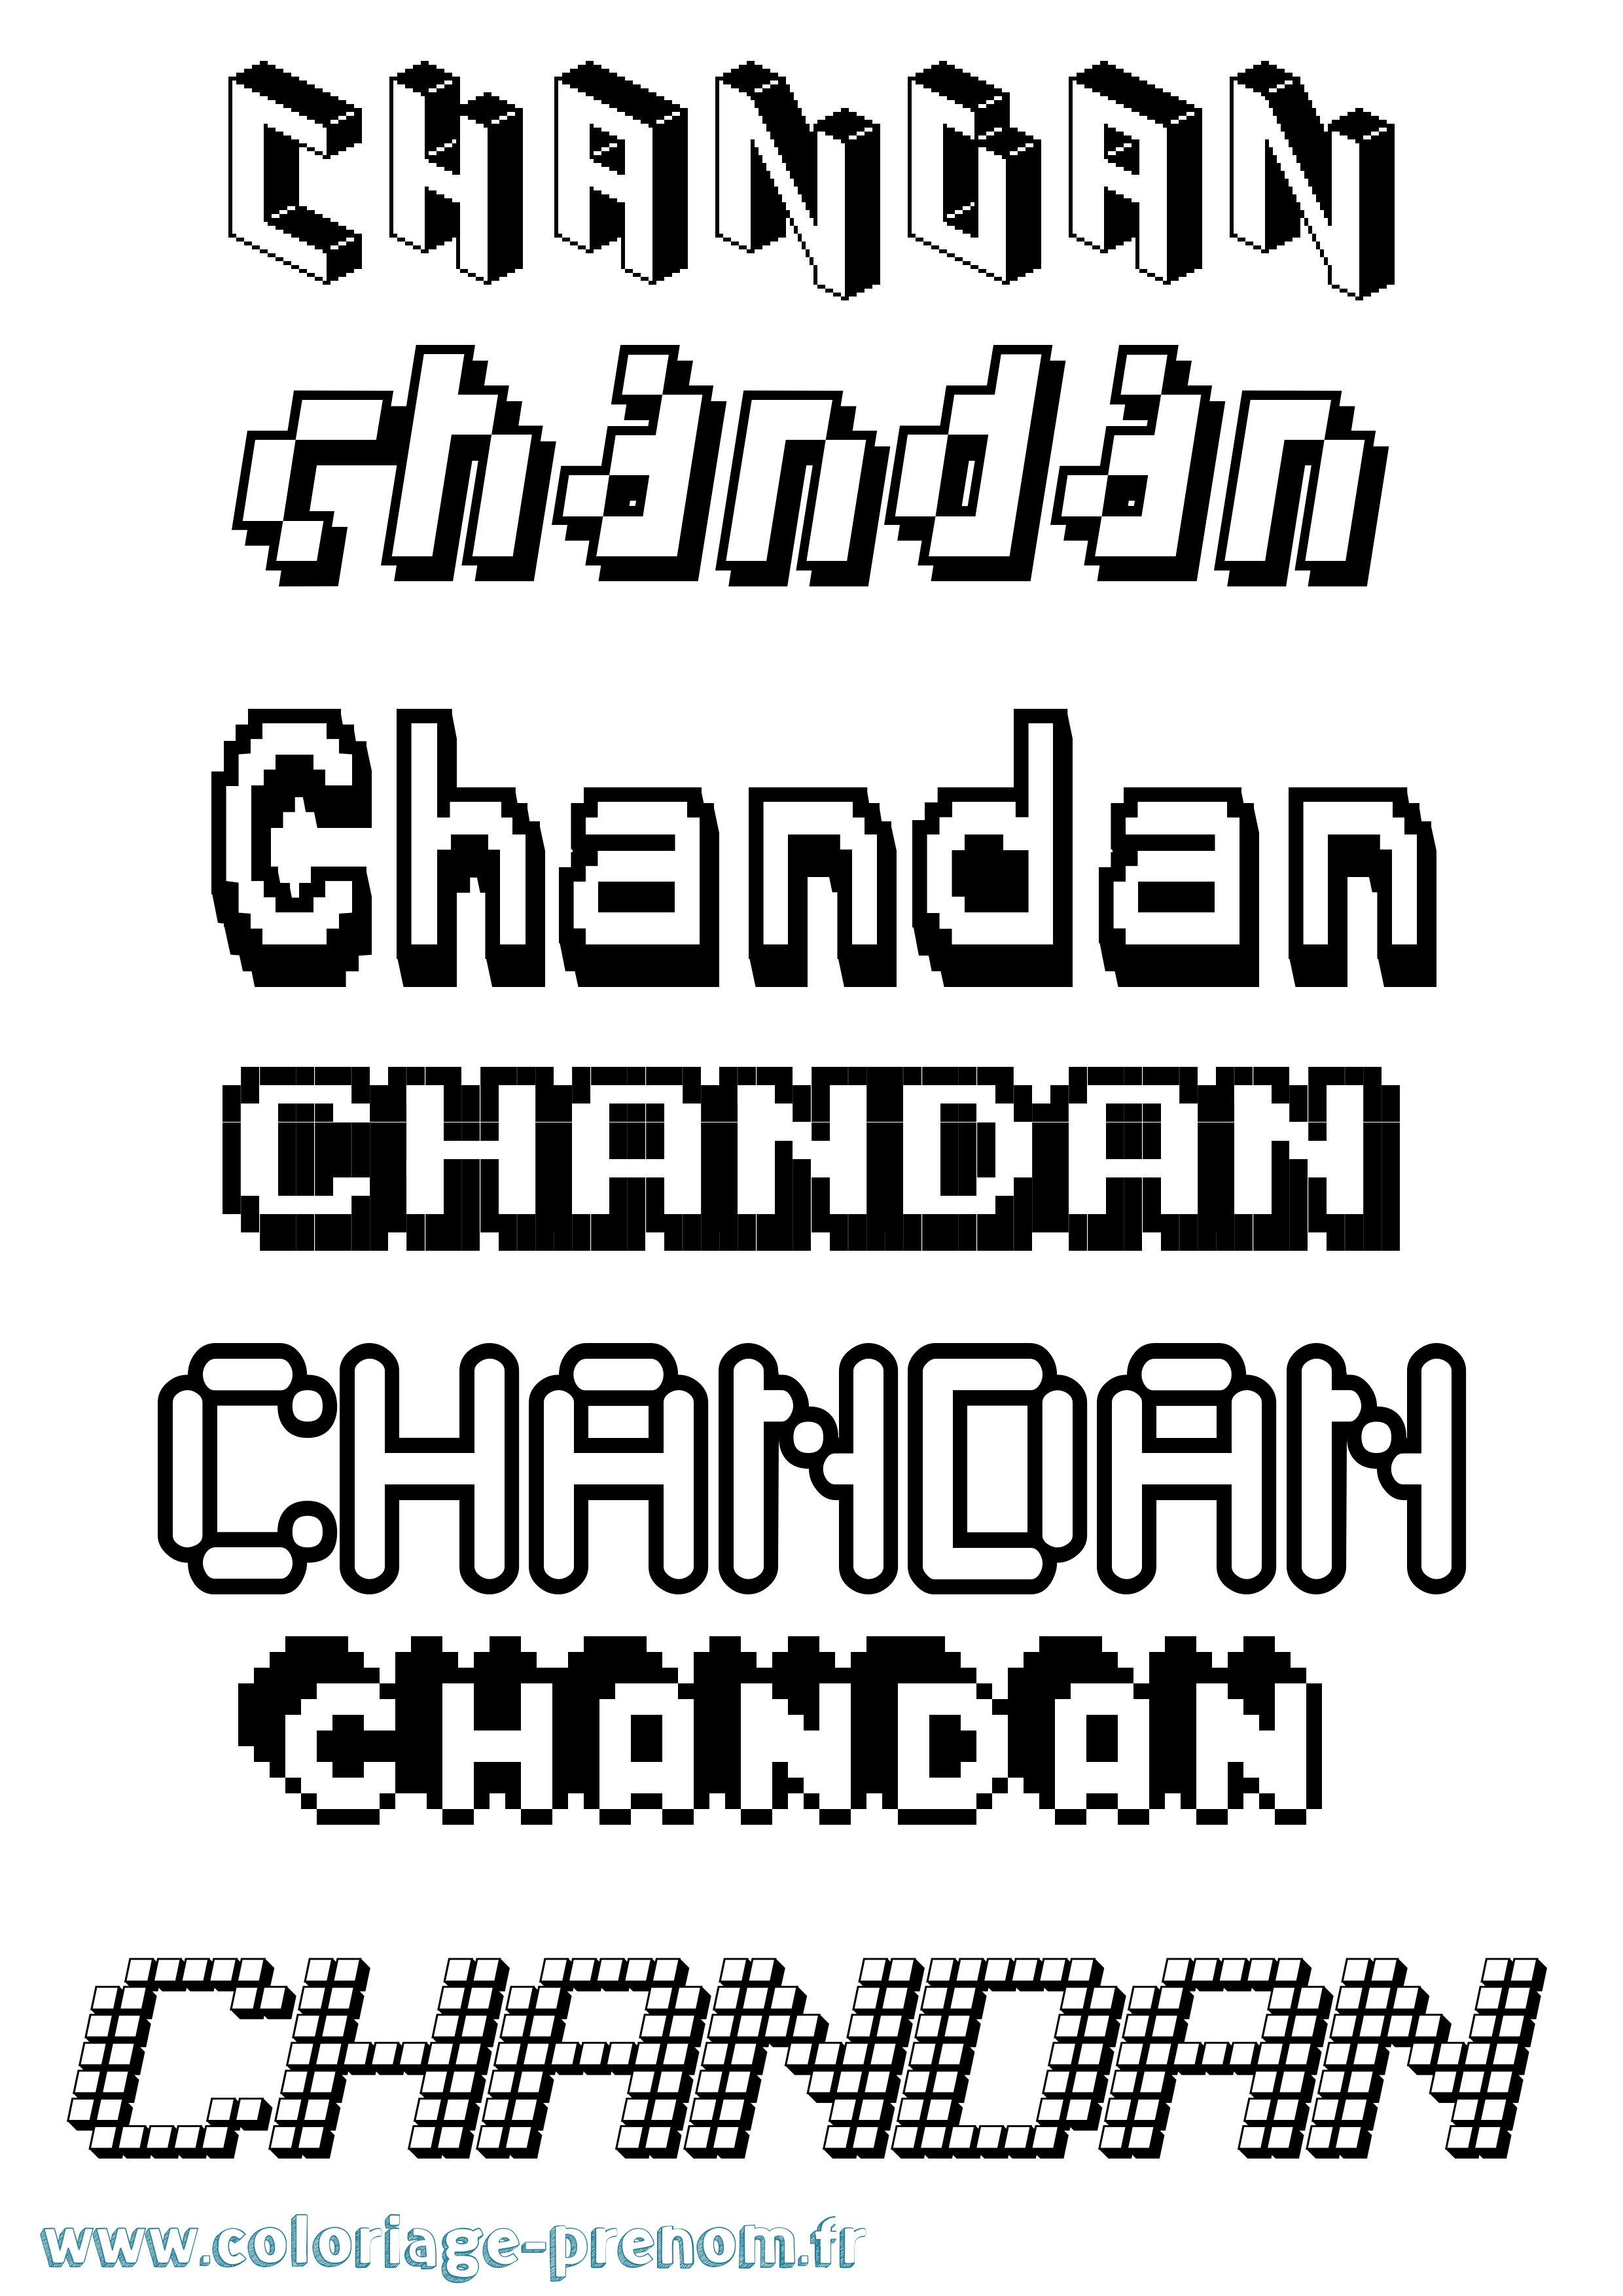 Coloriage prénom Chandan Pixel